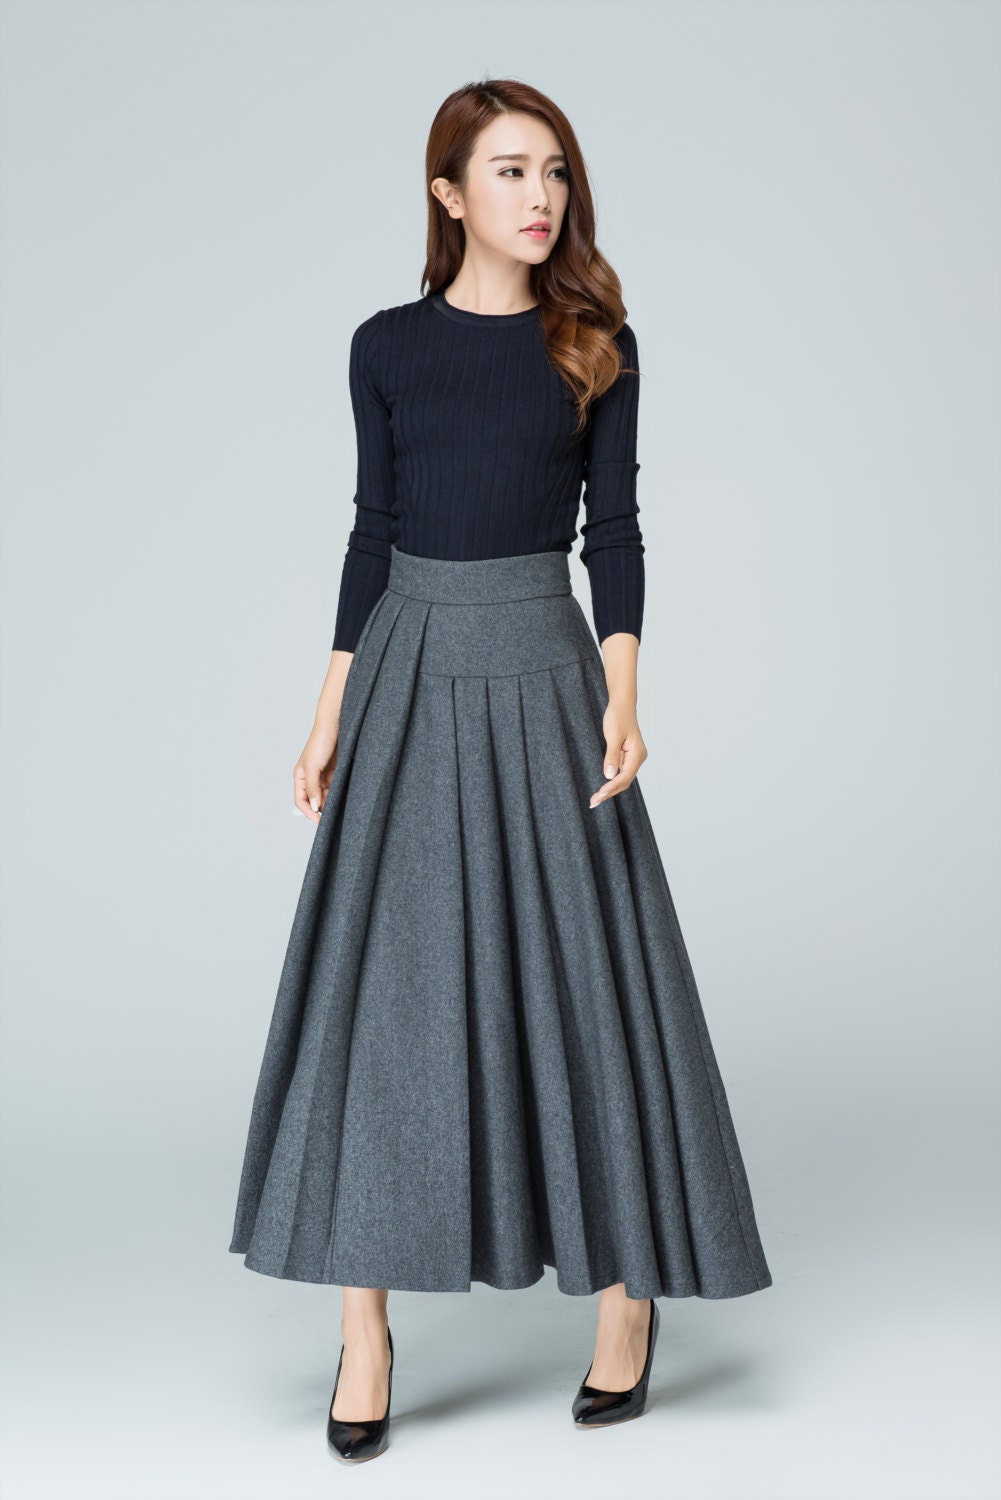 Wool skirt plus size skirt long skirt grey skirt pleated